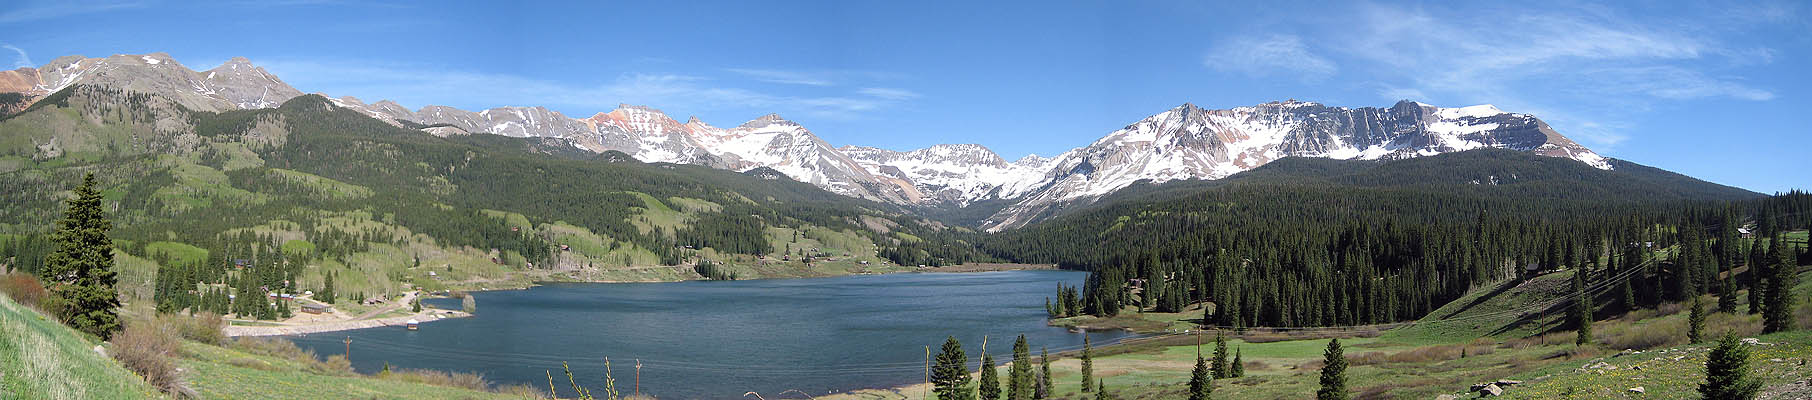 Telluride 2006: Panoramic View 3